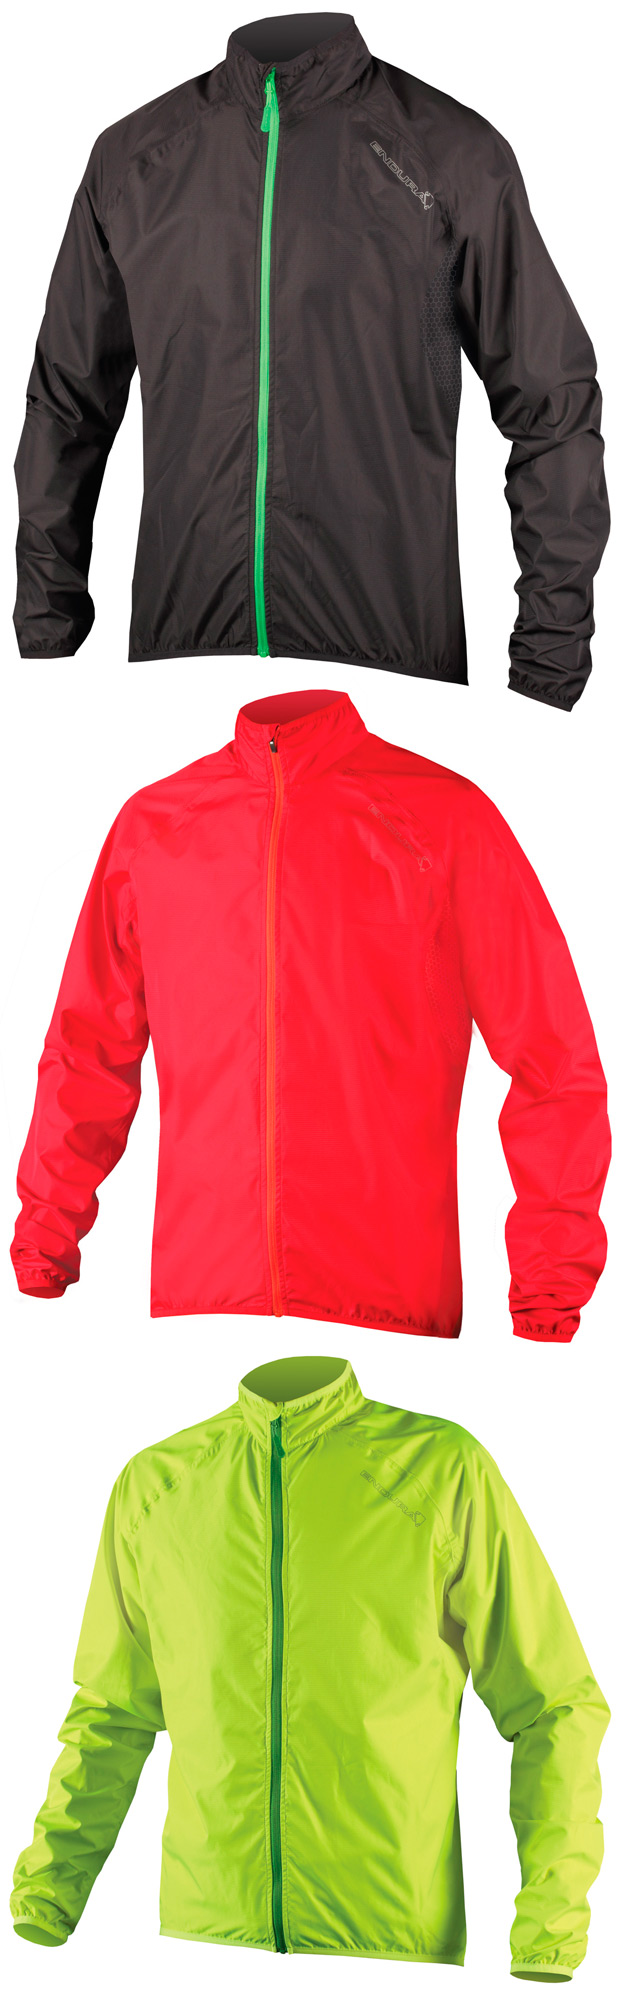 Endura Xtract: Una chaqueta ligera y compacta para nuestras salidas en bicicleta